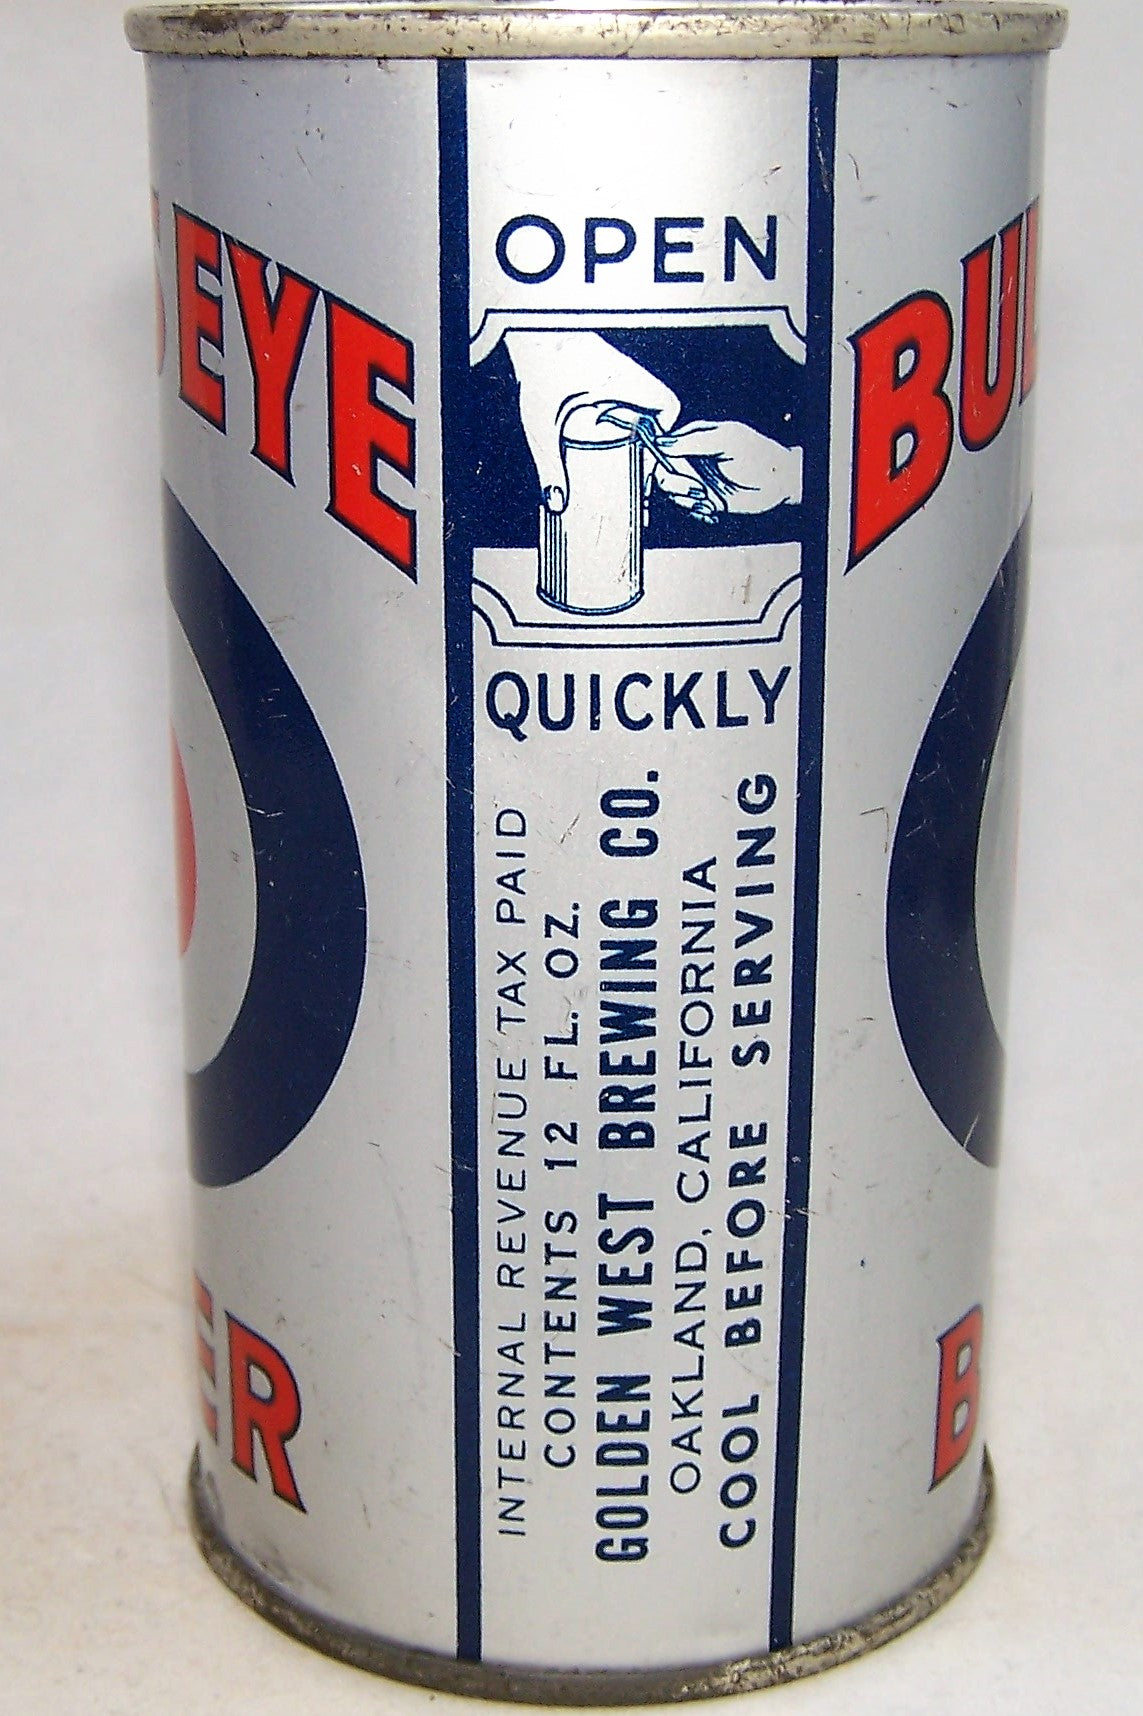 Bull's Eye Beer, USBC 46-06 Grade 1/1+ Sold on 06/09/18